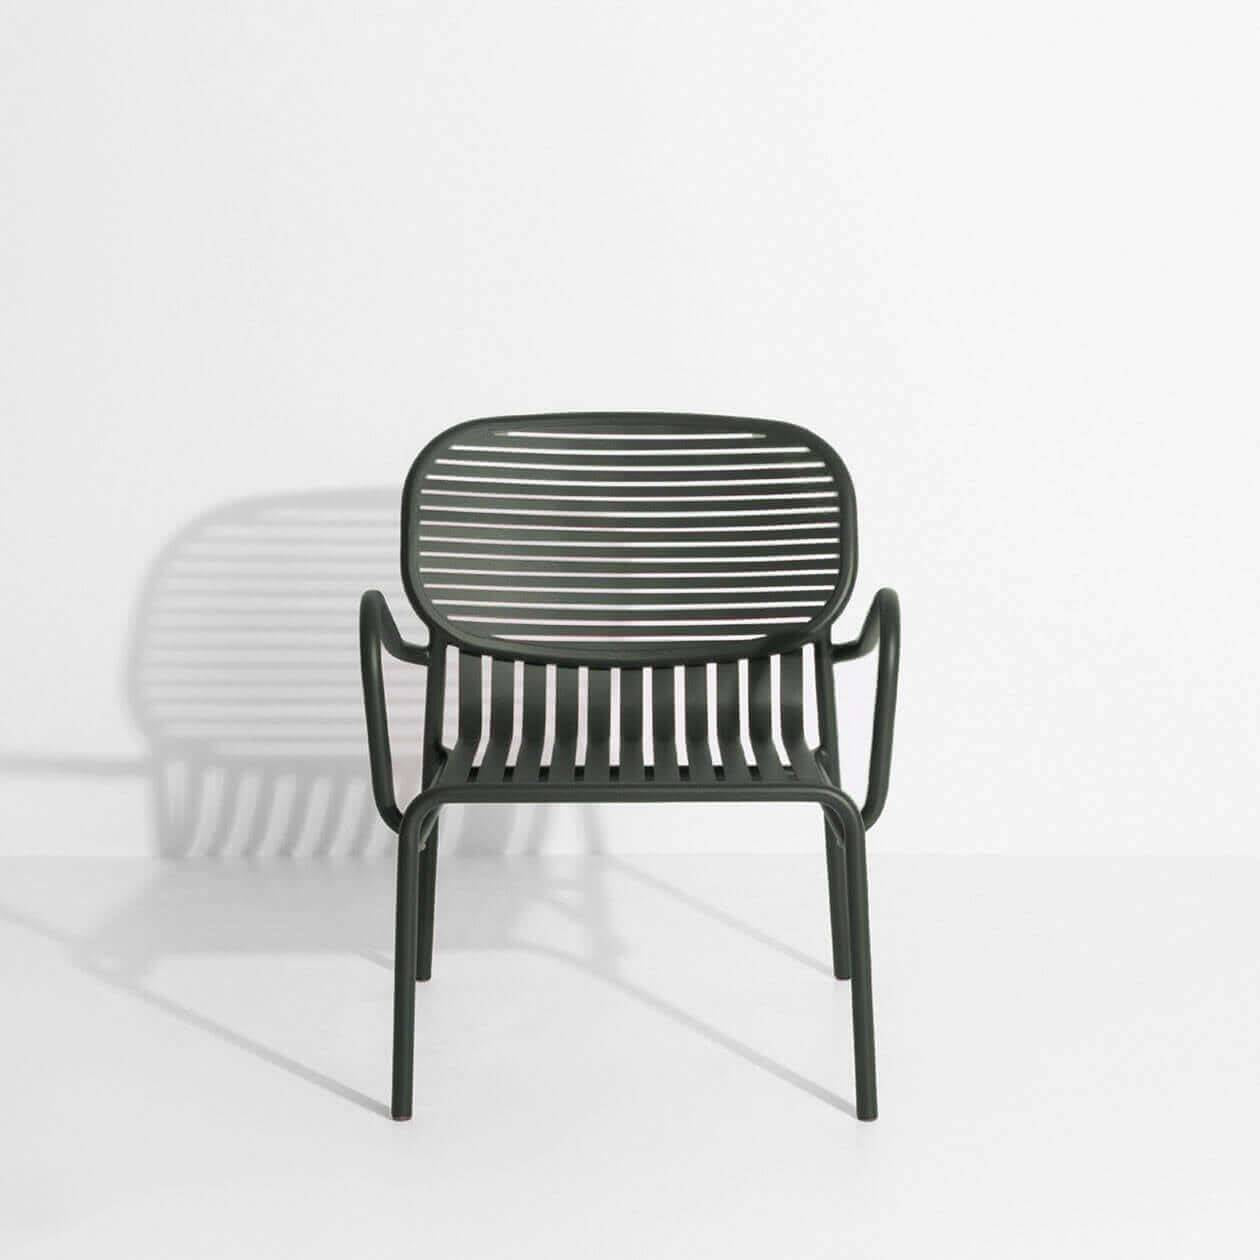 Week-End Garten Lounger in Green Glass präsentiert im Onlineshop von KAQTU Design AG. Outdoor-Sessel mit Armlehnen ist von Petite Friture